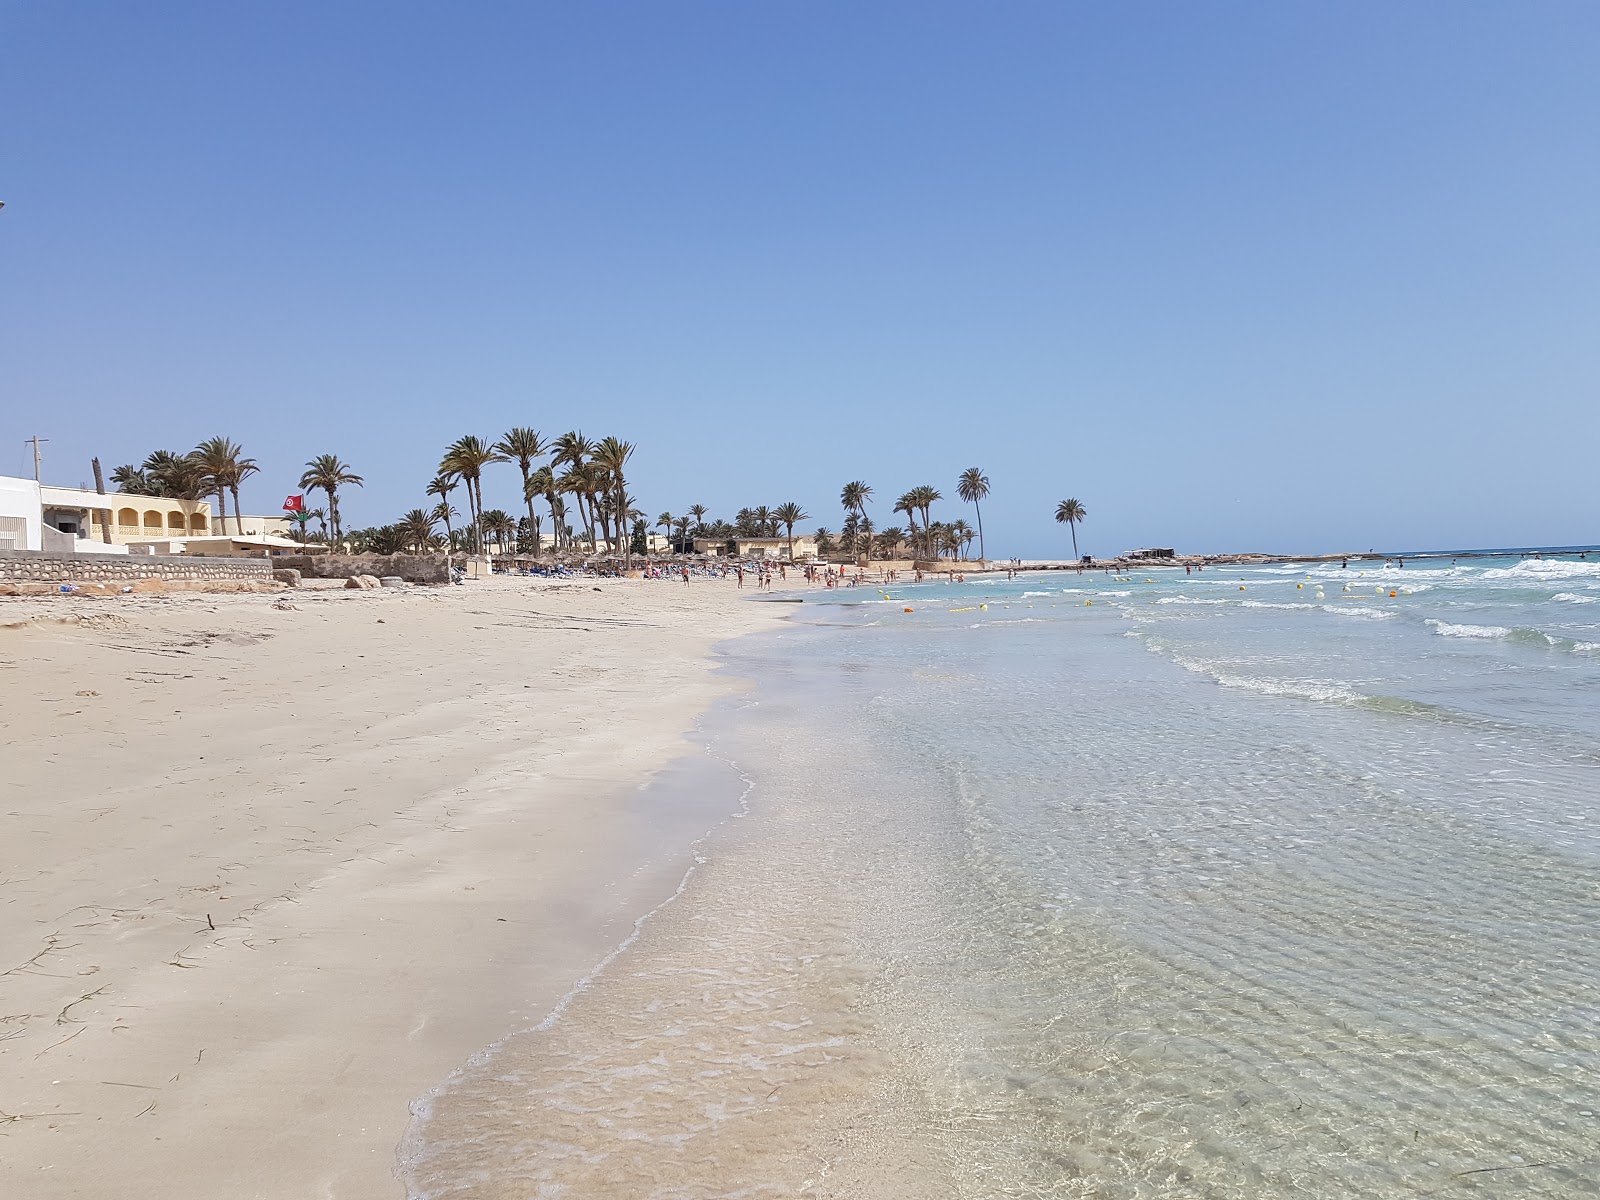 Fotografie cu Al-Swehel beach cu o suprafață de nisip alb